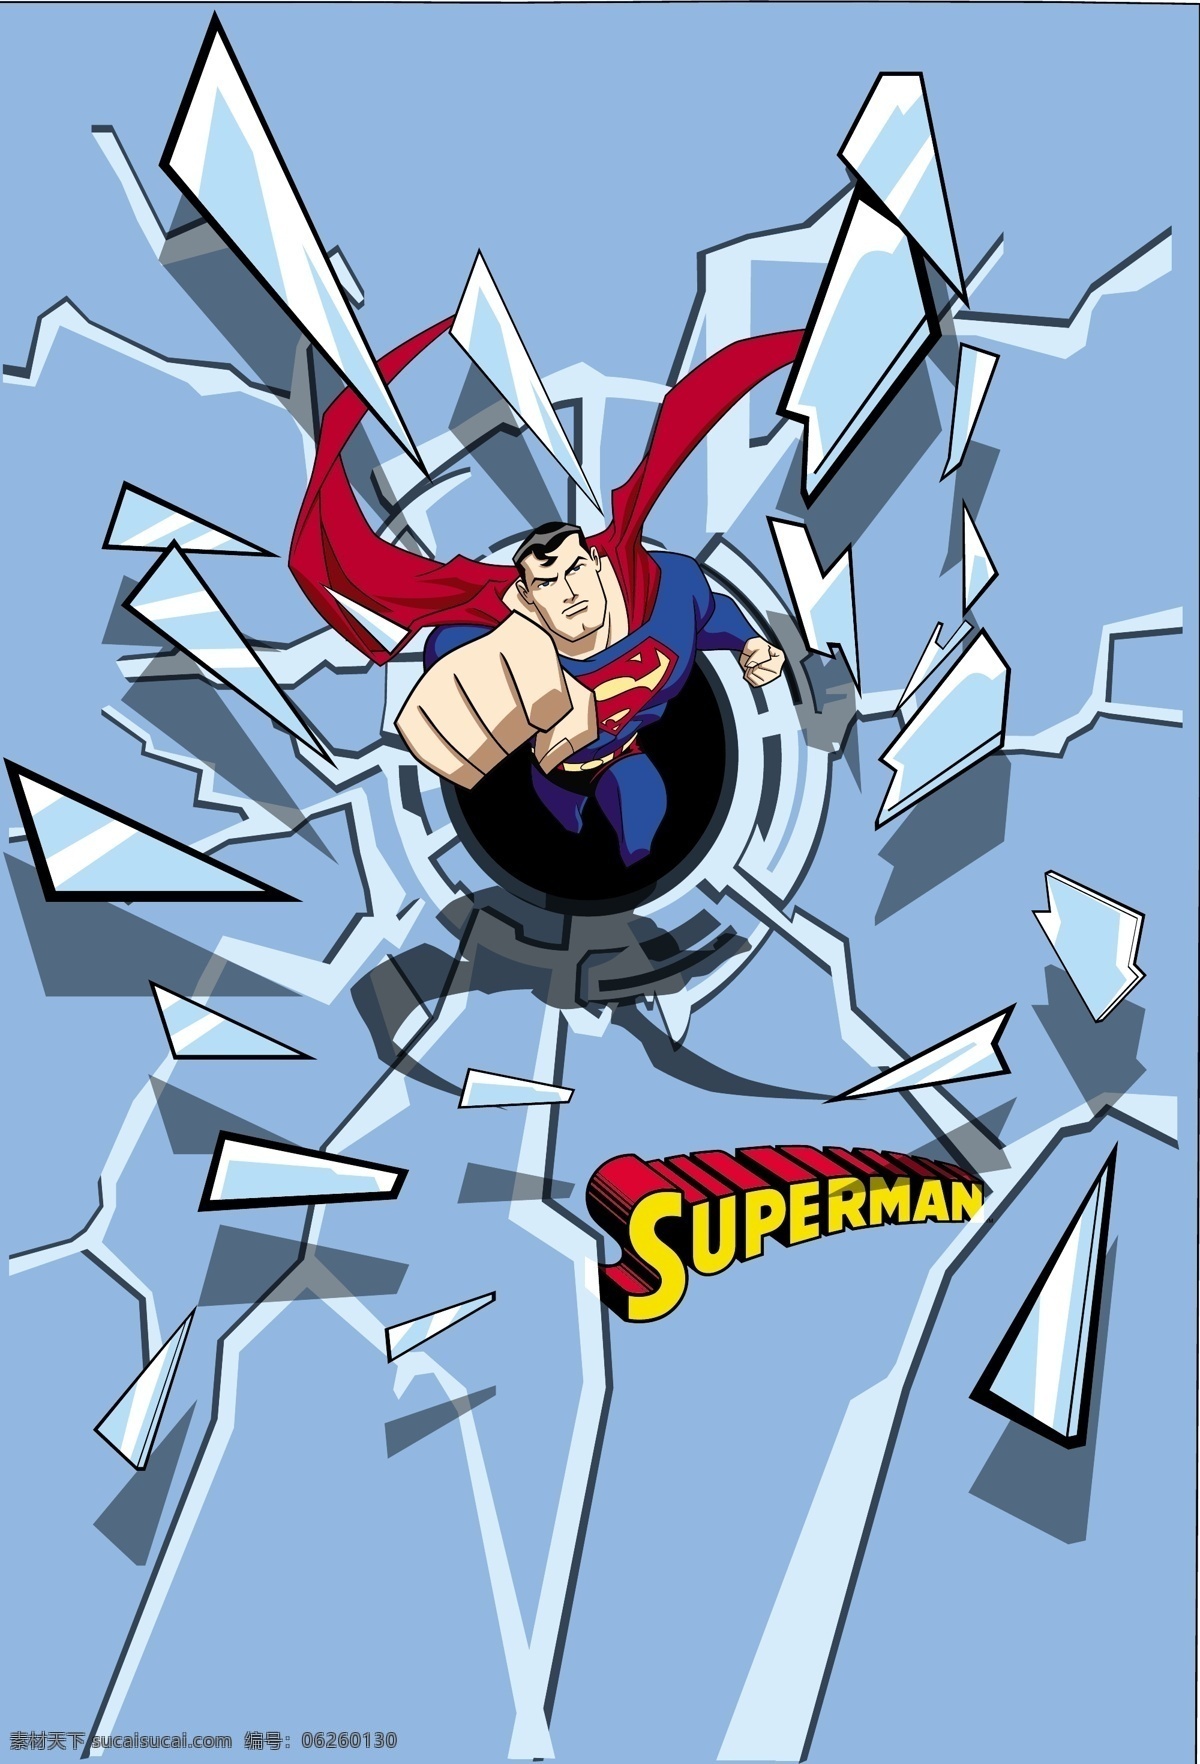 超人 superman 蝙蝠侠 batman 闪电侠 flash 华纳 dc漫画 超级英雄 英雄联盟 卡通形象 其他人物 矢量人物 矢量 超人英雄